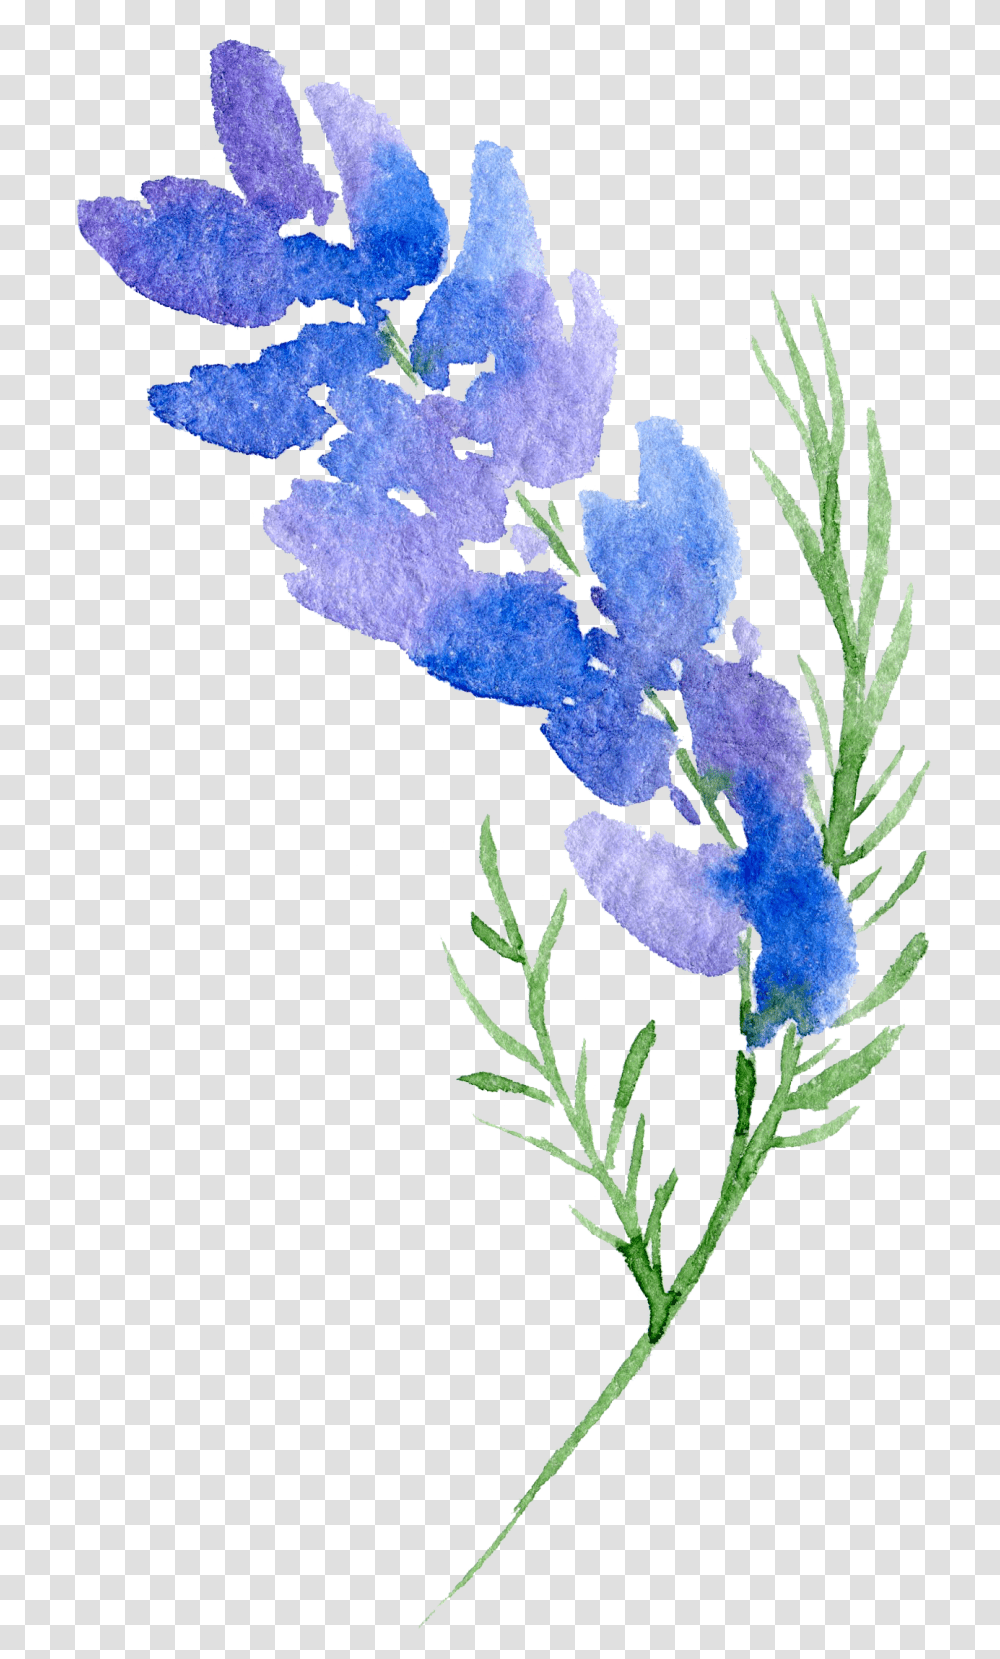 Floral Design Flower Watercolor Background Flower, Plant, Iris, Blossom, Leaf Transparent Png